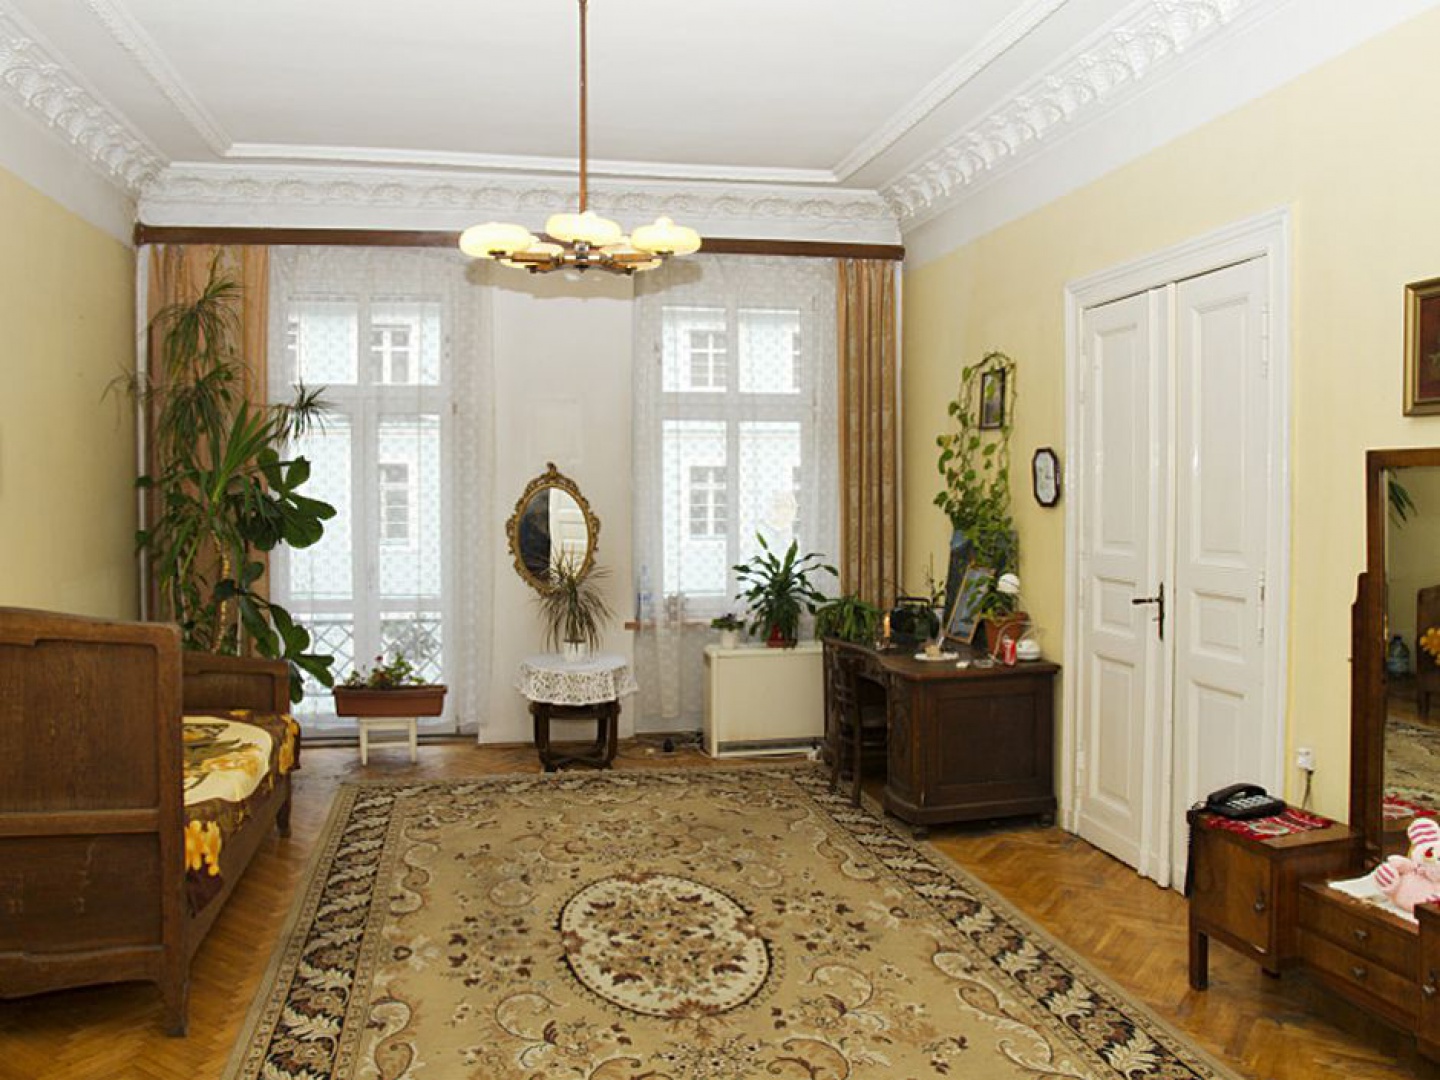 W salonie przed remontem podłogę pokrywa duży, klasyczny dywan. Fot. Iwona Kurkowska